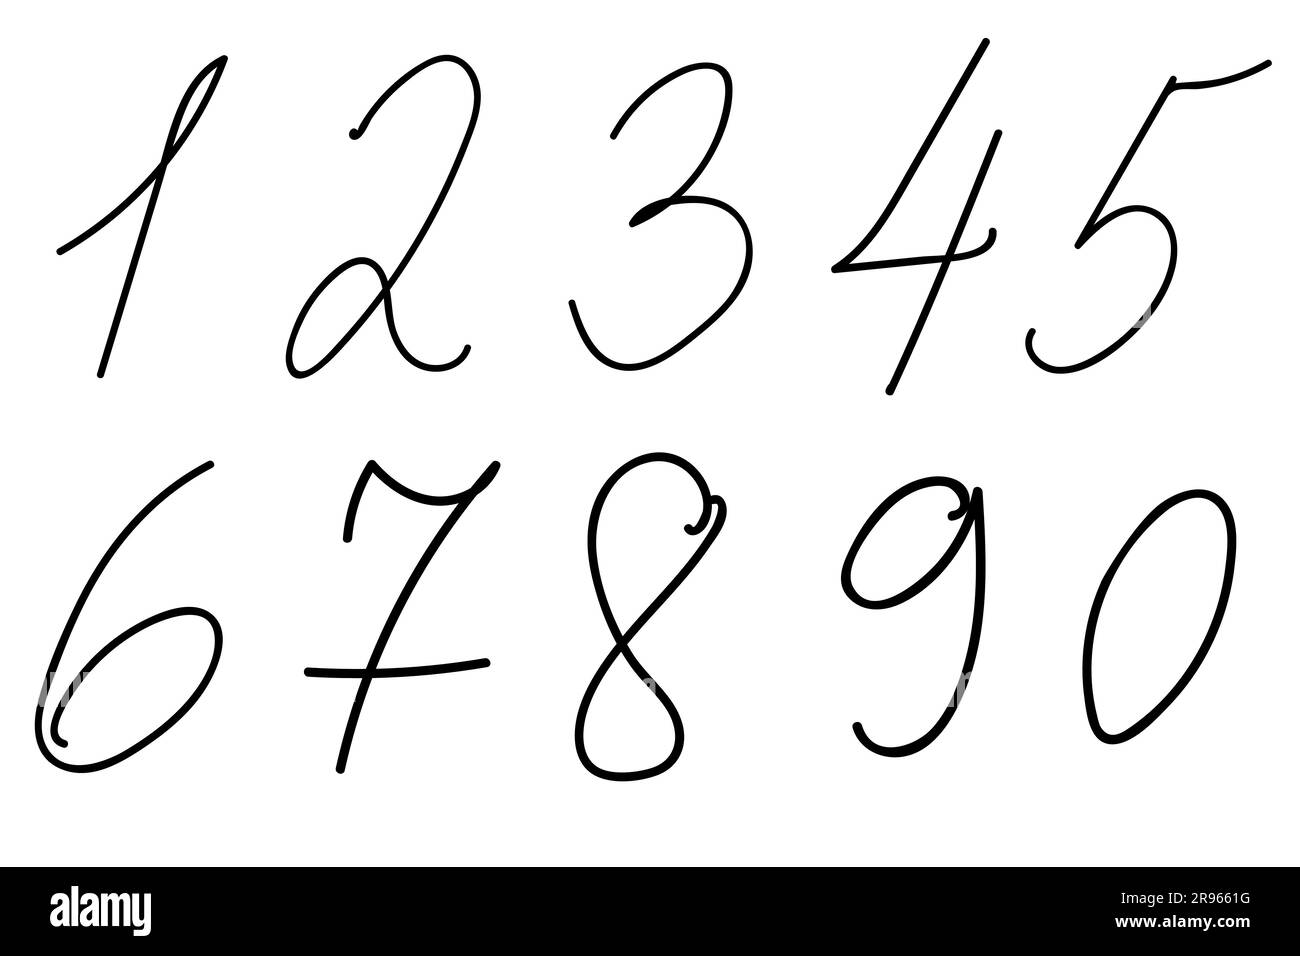 vector-set-of-handwritten-numbers-hand-drawn-doodle-numbers-vector